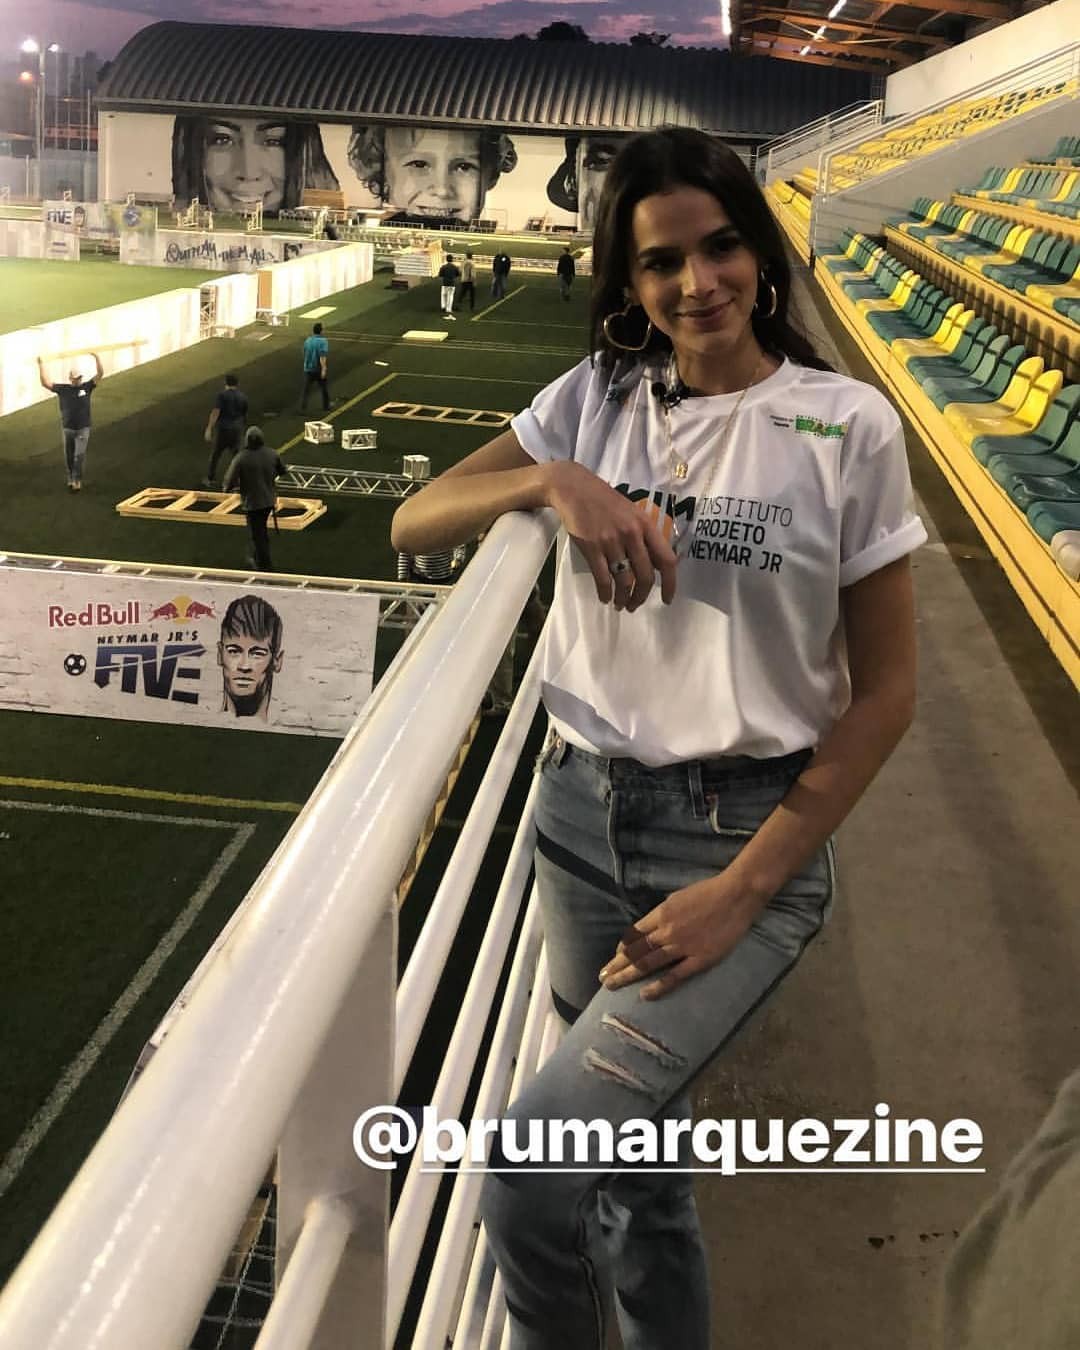 Bruna Marquezine (Foto: Reprodução/Instagram)